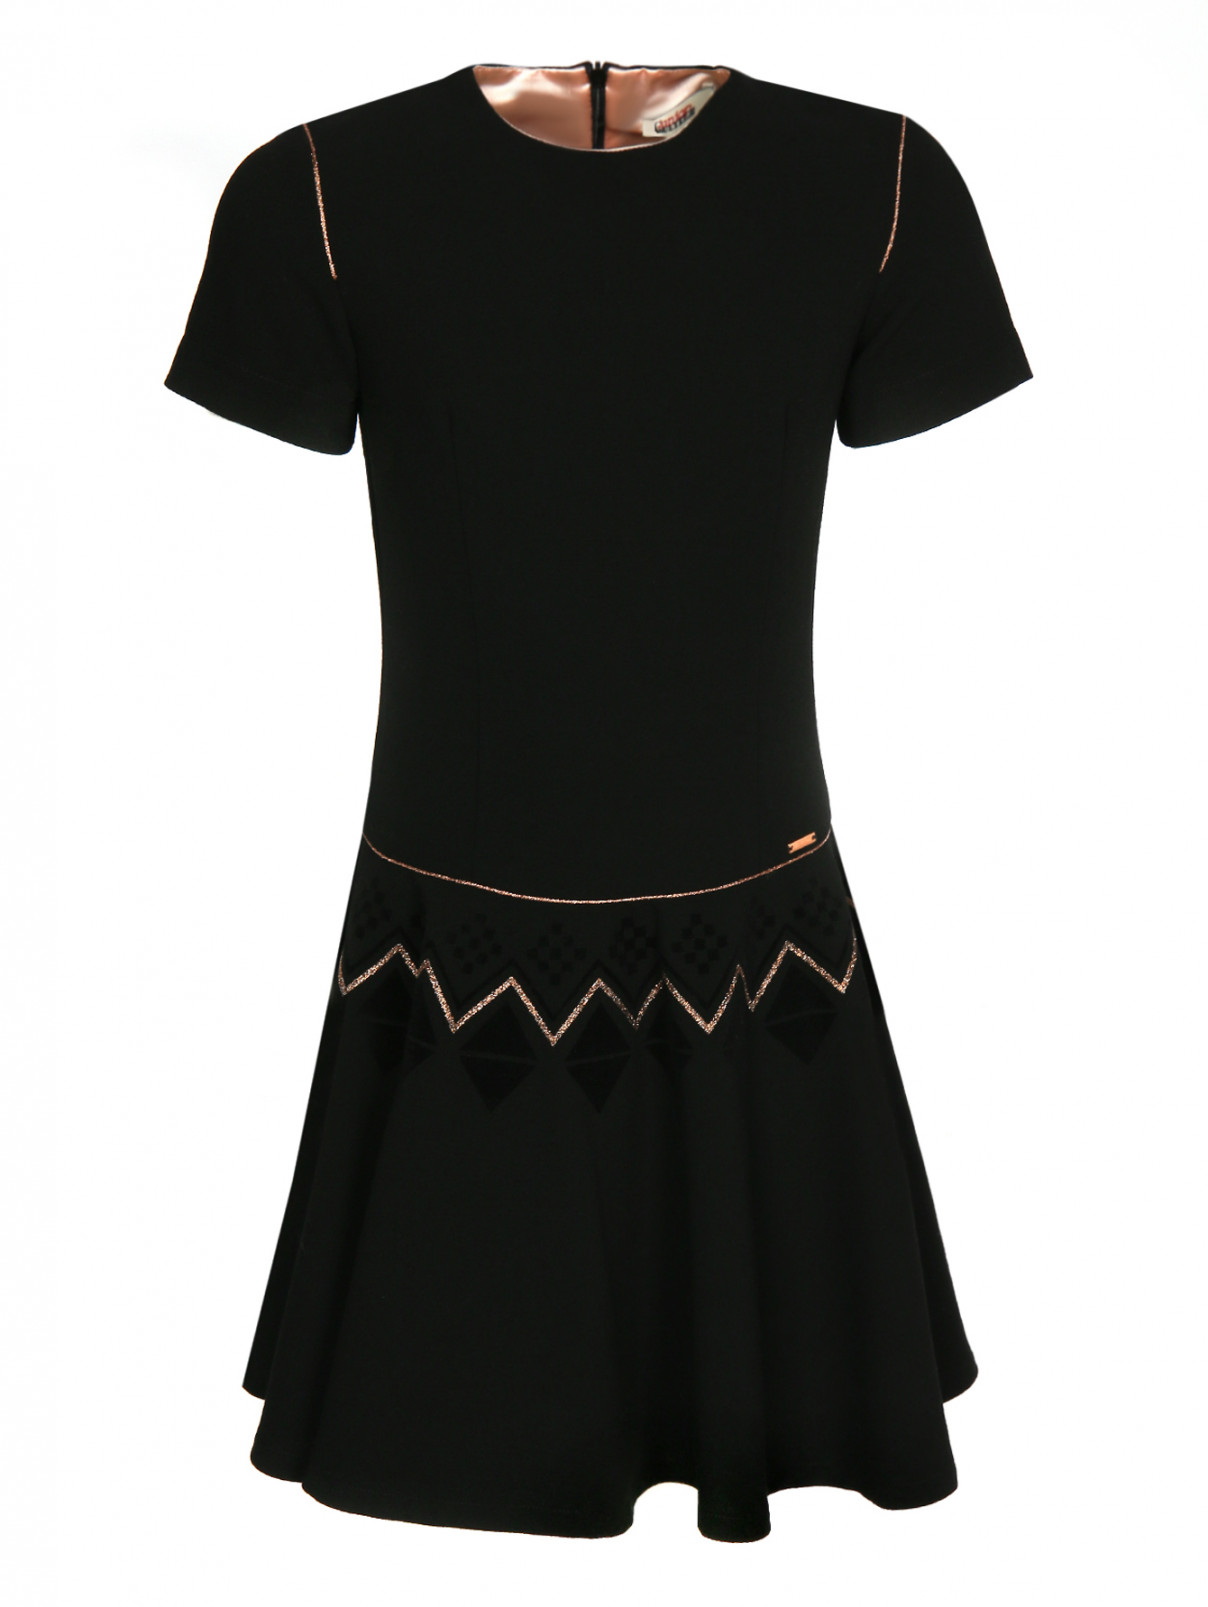 Платье на заниженной талии Junior Gaultier  –  Общий вид  – Цвет:  Черный